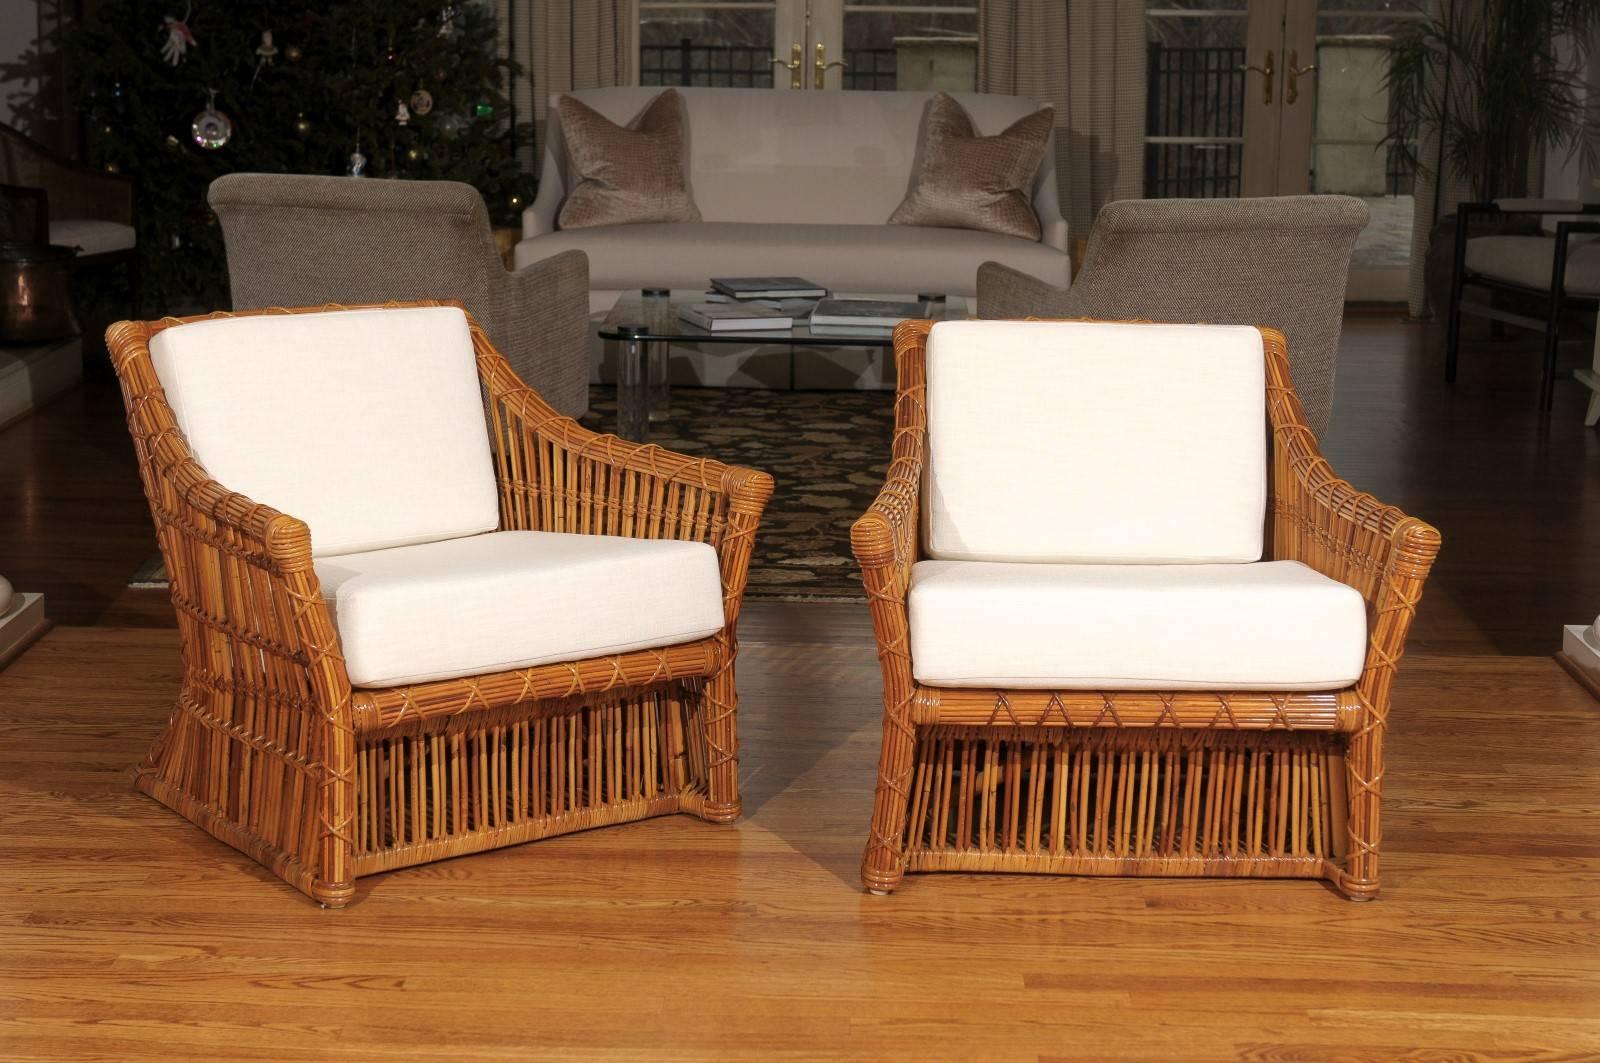 Ces magnifiques chaises longues sont expédiées telles qu'elles ont été photographiées par des professionnels et décrites dans le texte de l'annonce : Méticuleusement restaurés par des professionnels et prêts à être installés. Nouvelle sellerie